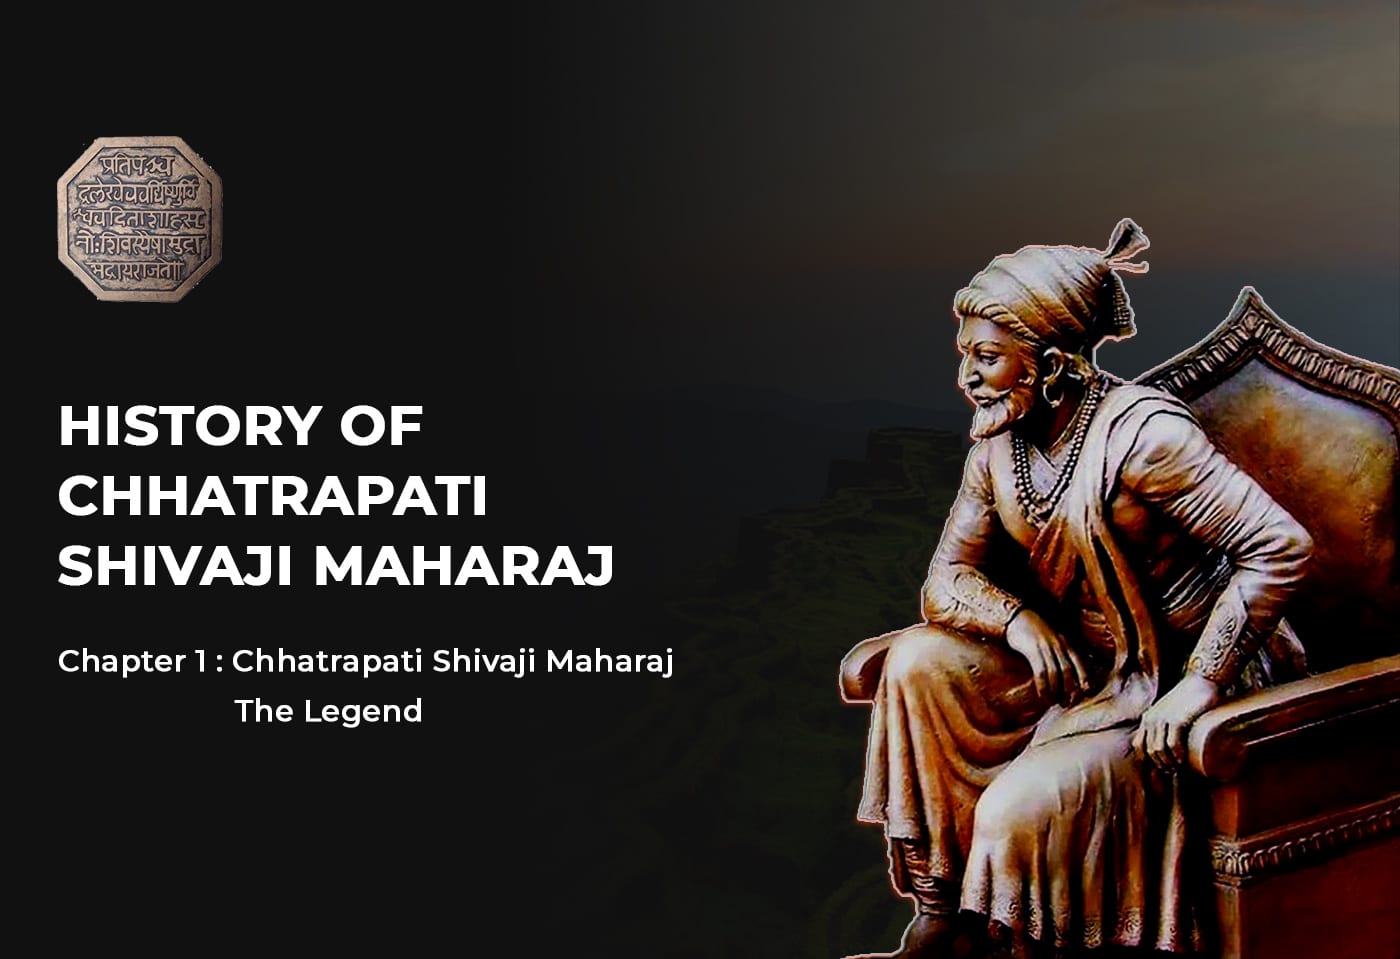 HISTORY FAN CHHATRAPATI SHIVAJI MAHARAJ - Haadstik 1 Chhatrapati Shivaji Maharaj The Legend - HinduFAQs